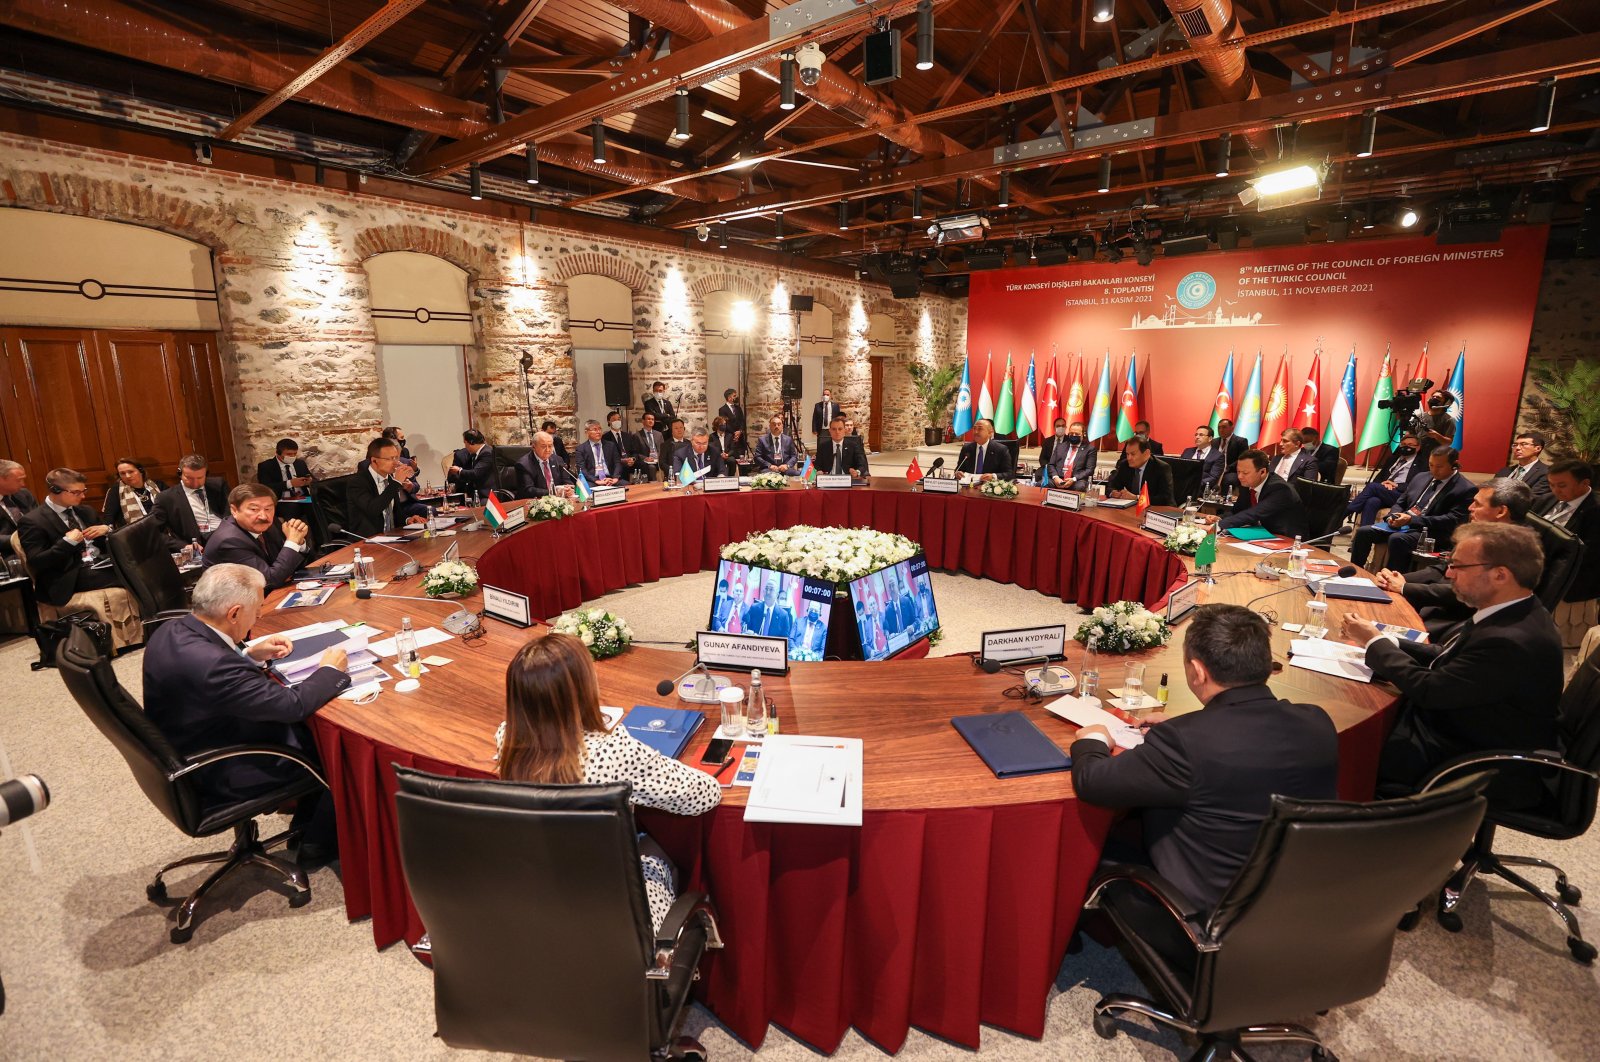 Dewan Turki mengubah citra, bertujuan untuk meningkatkan hubungan melalui transformasi